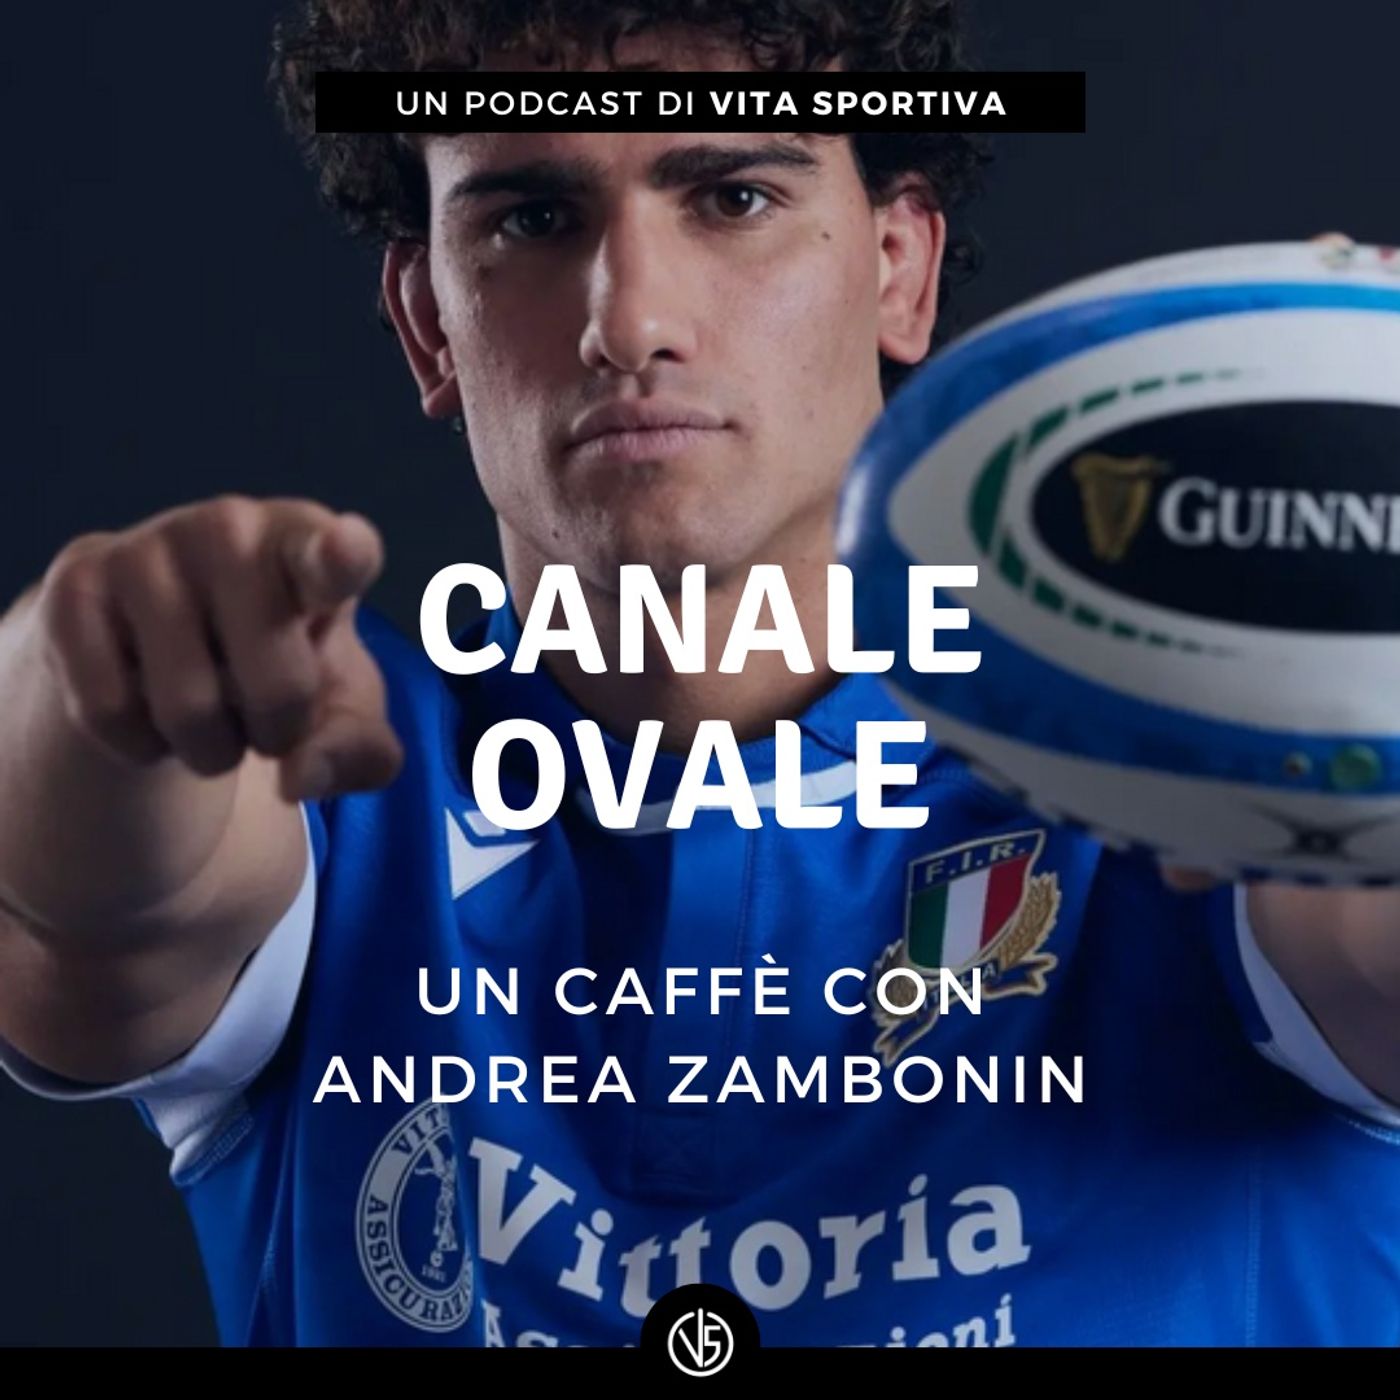 Un caffè con Andrea Zambonin